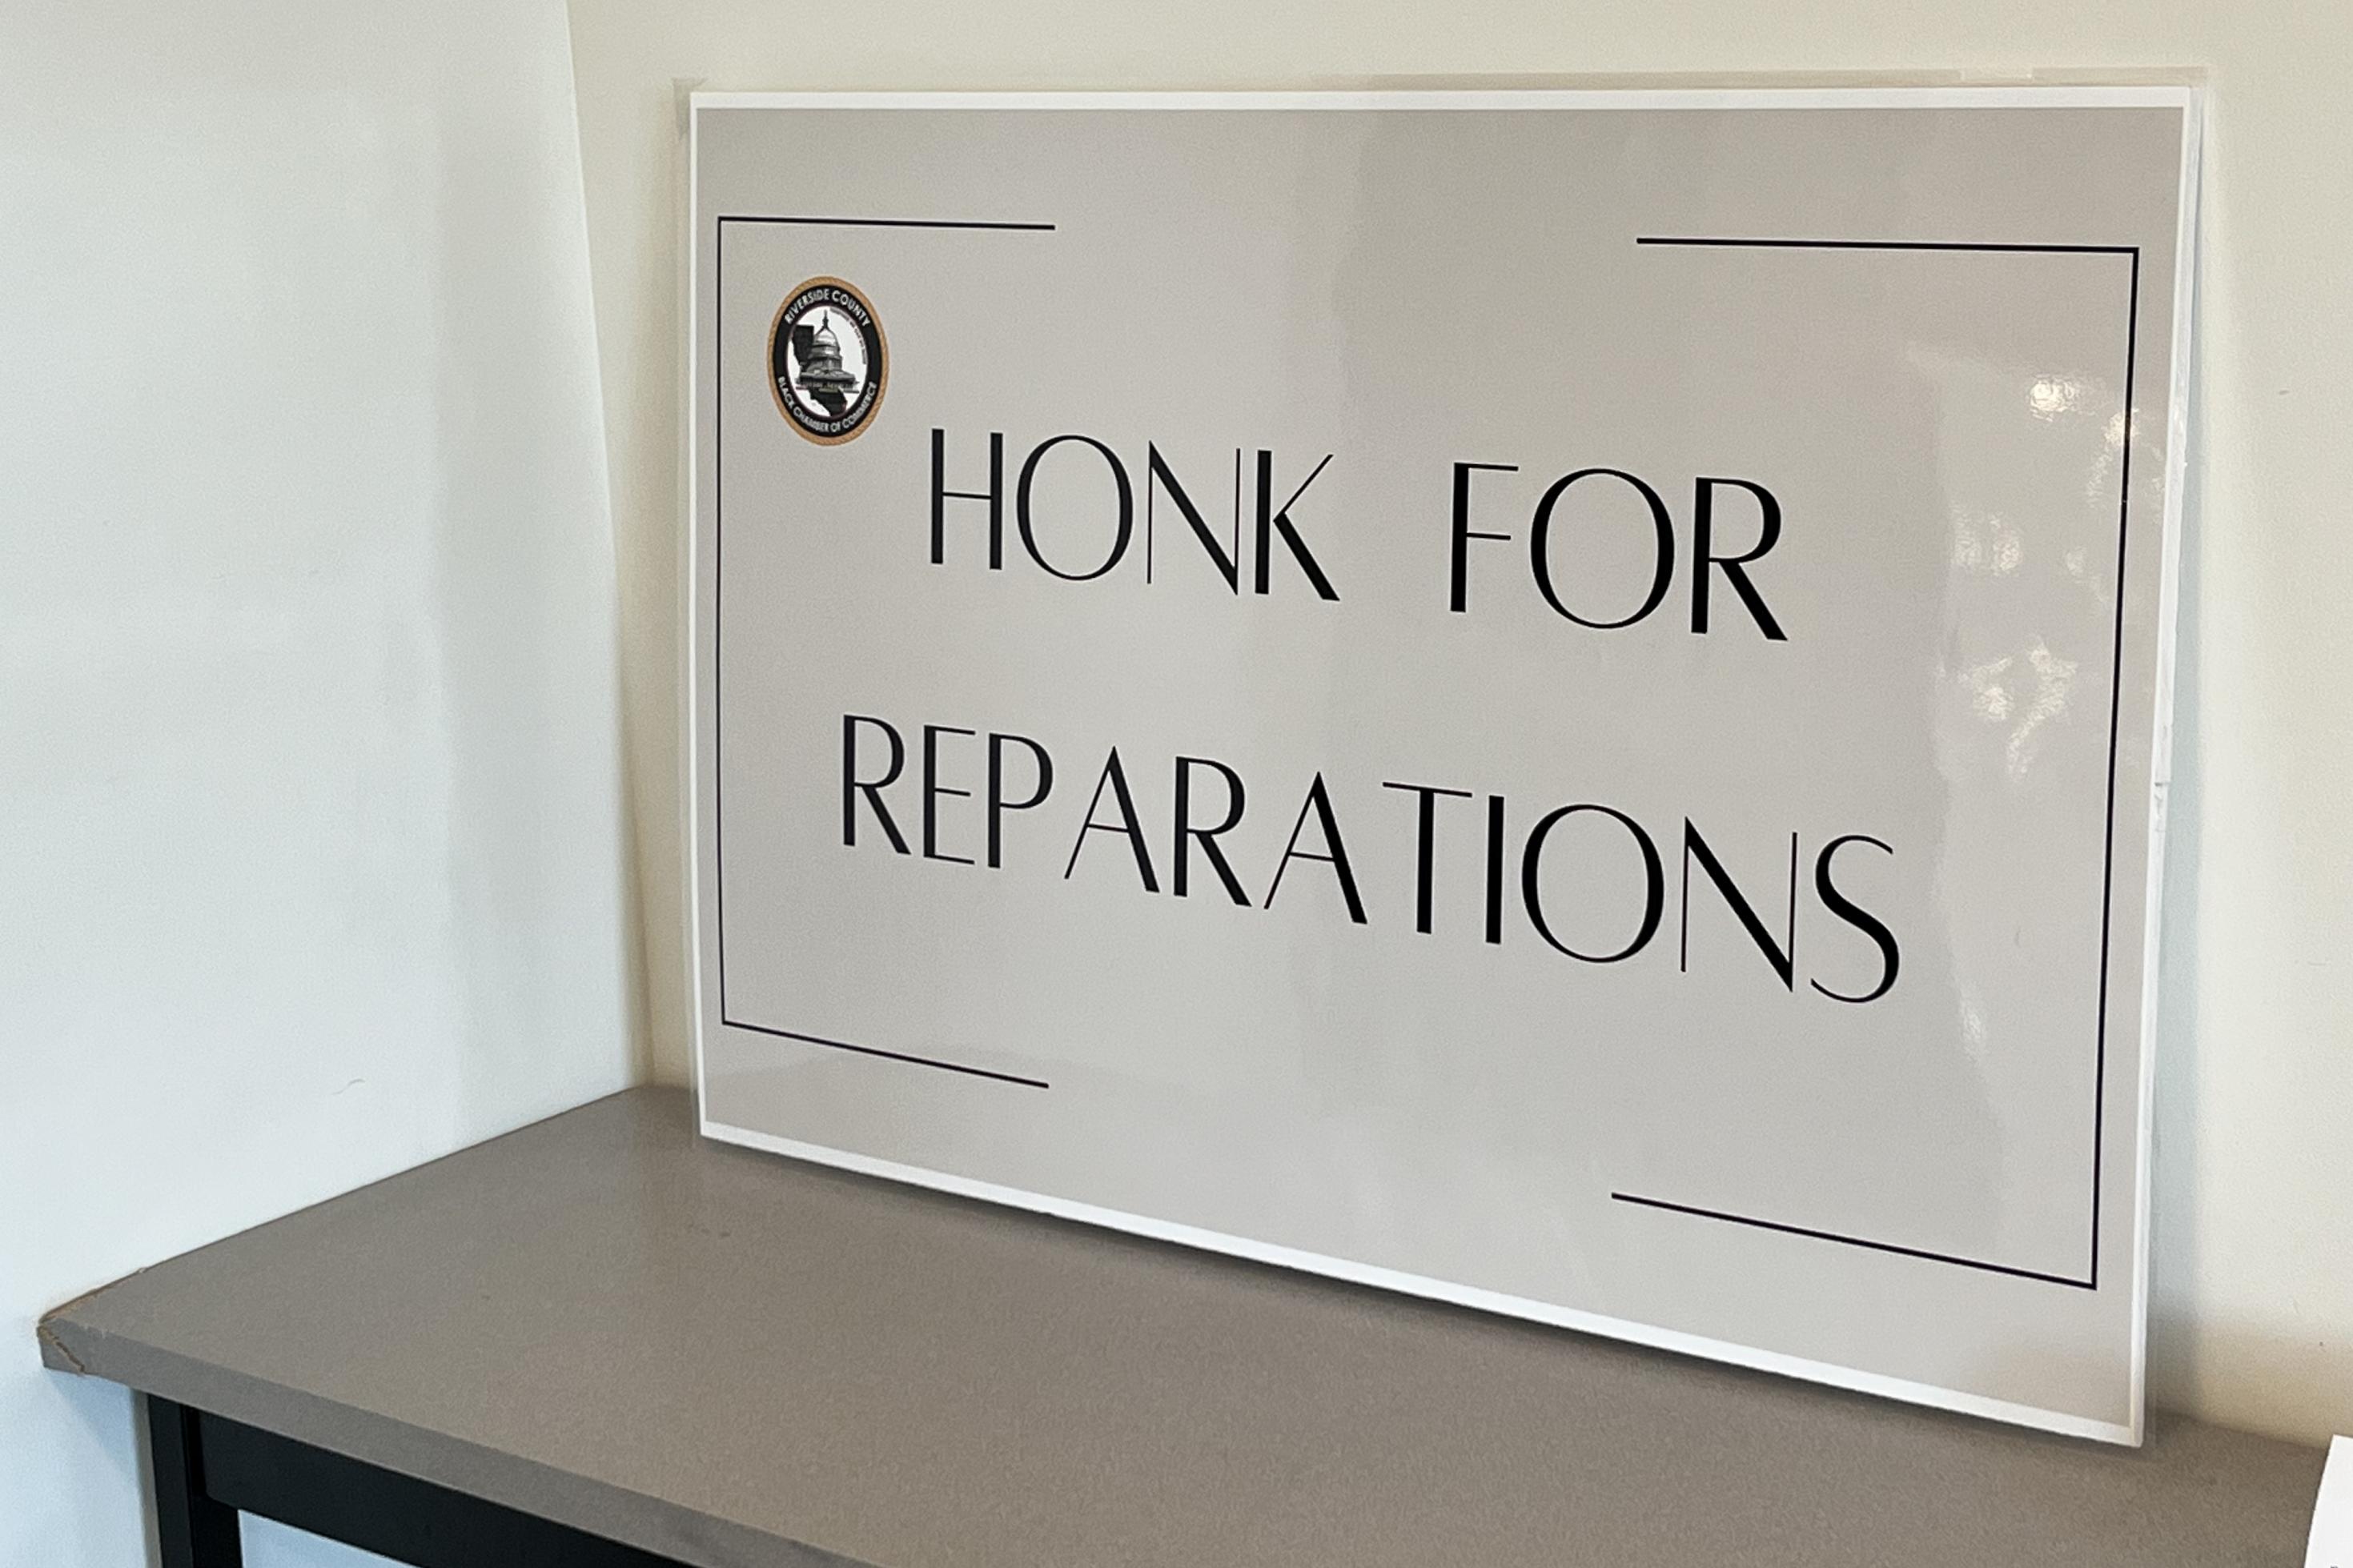 Ein weißes Schild mit schwarzer Aufschrift „Honk for reparations“ – Hupen für Entschädigung lehnt an einer weißen Wand